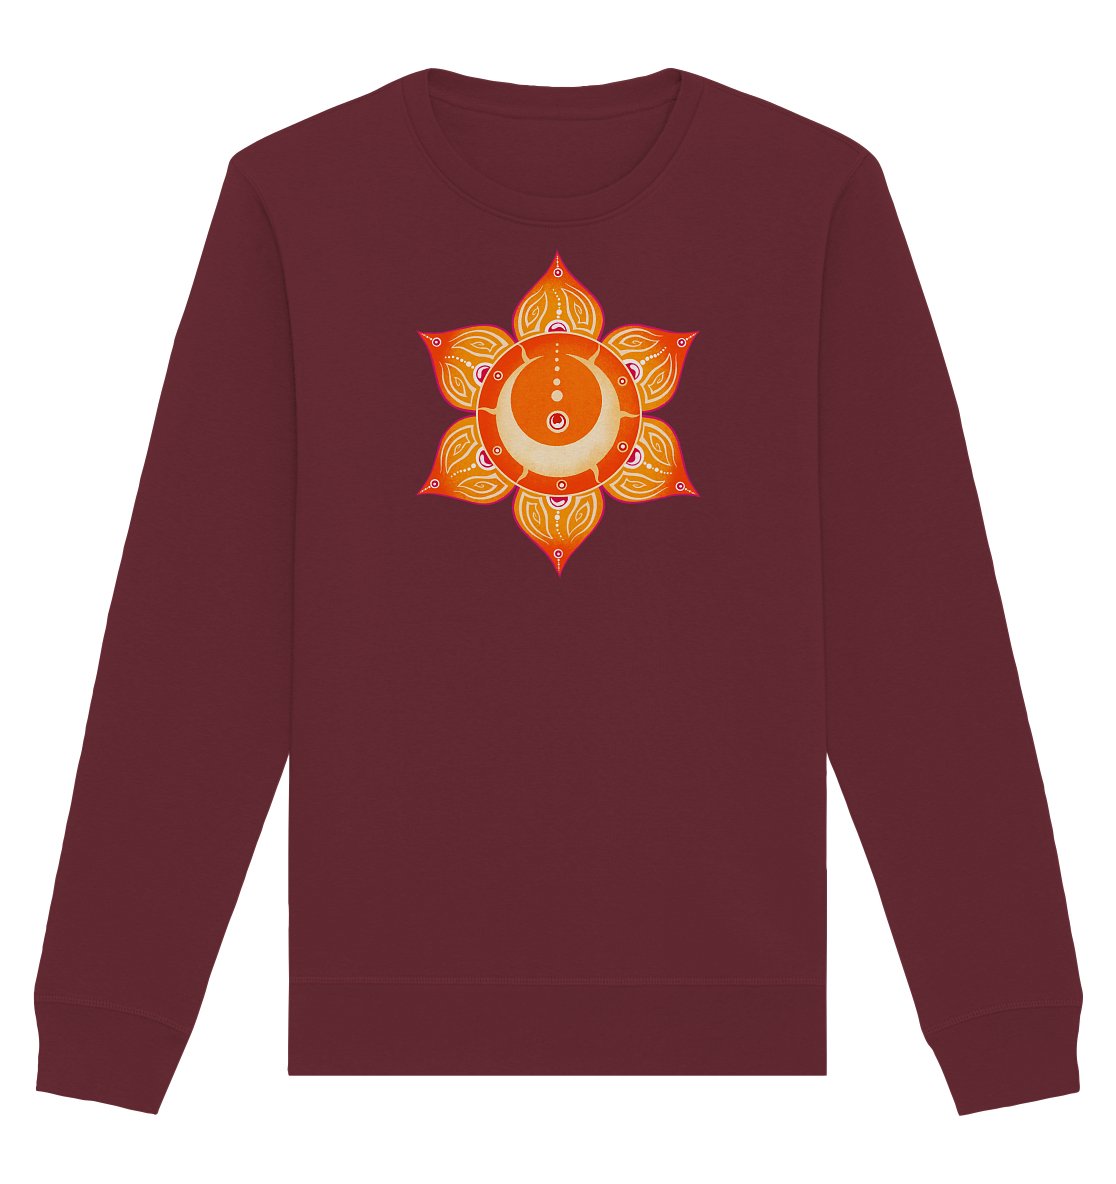 Sakralchakra | Swadhisthana Chakra | Organisches Unisex Sweatshirt - Organic Basic Unisex Sweatshirt - Deivi